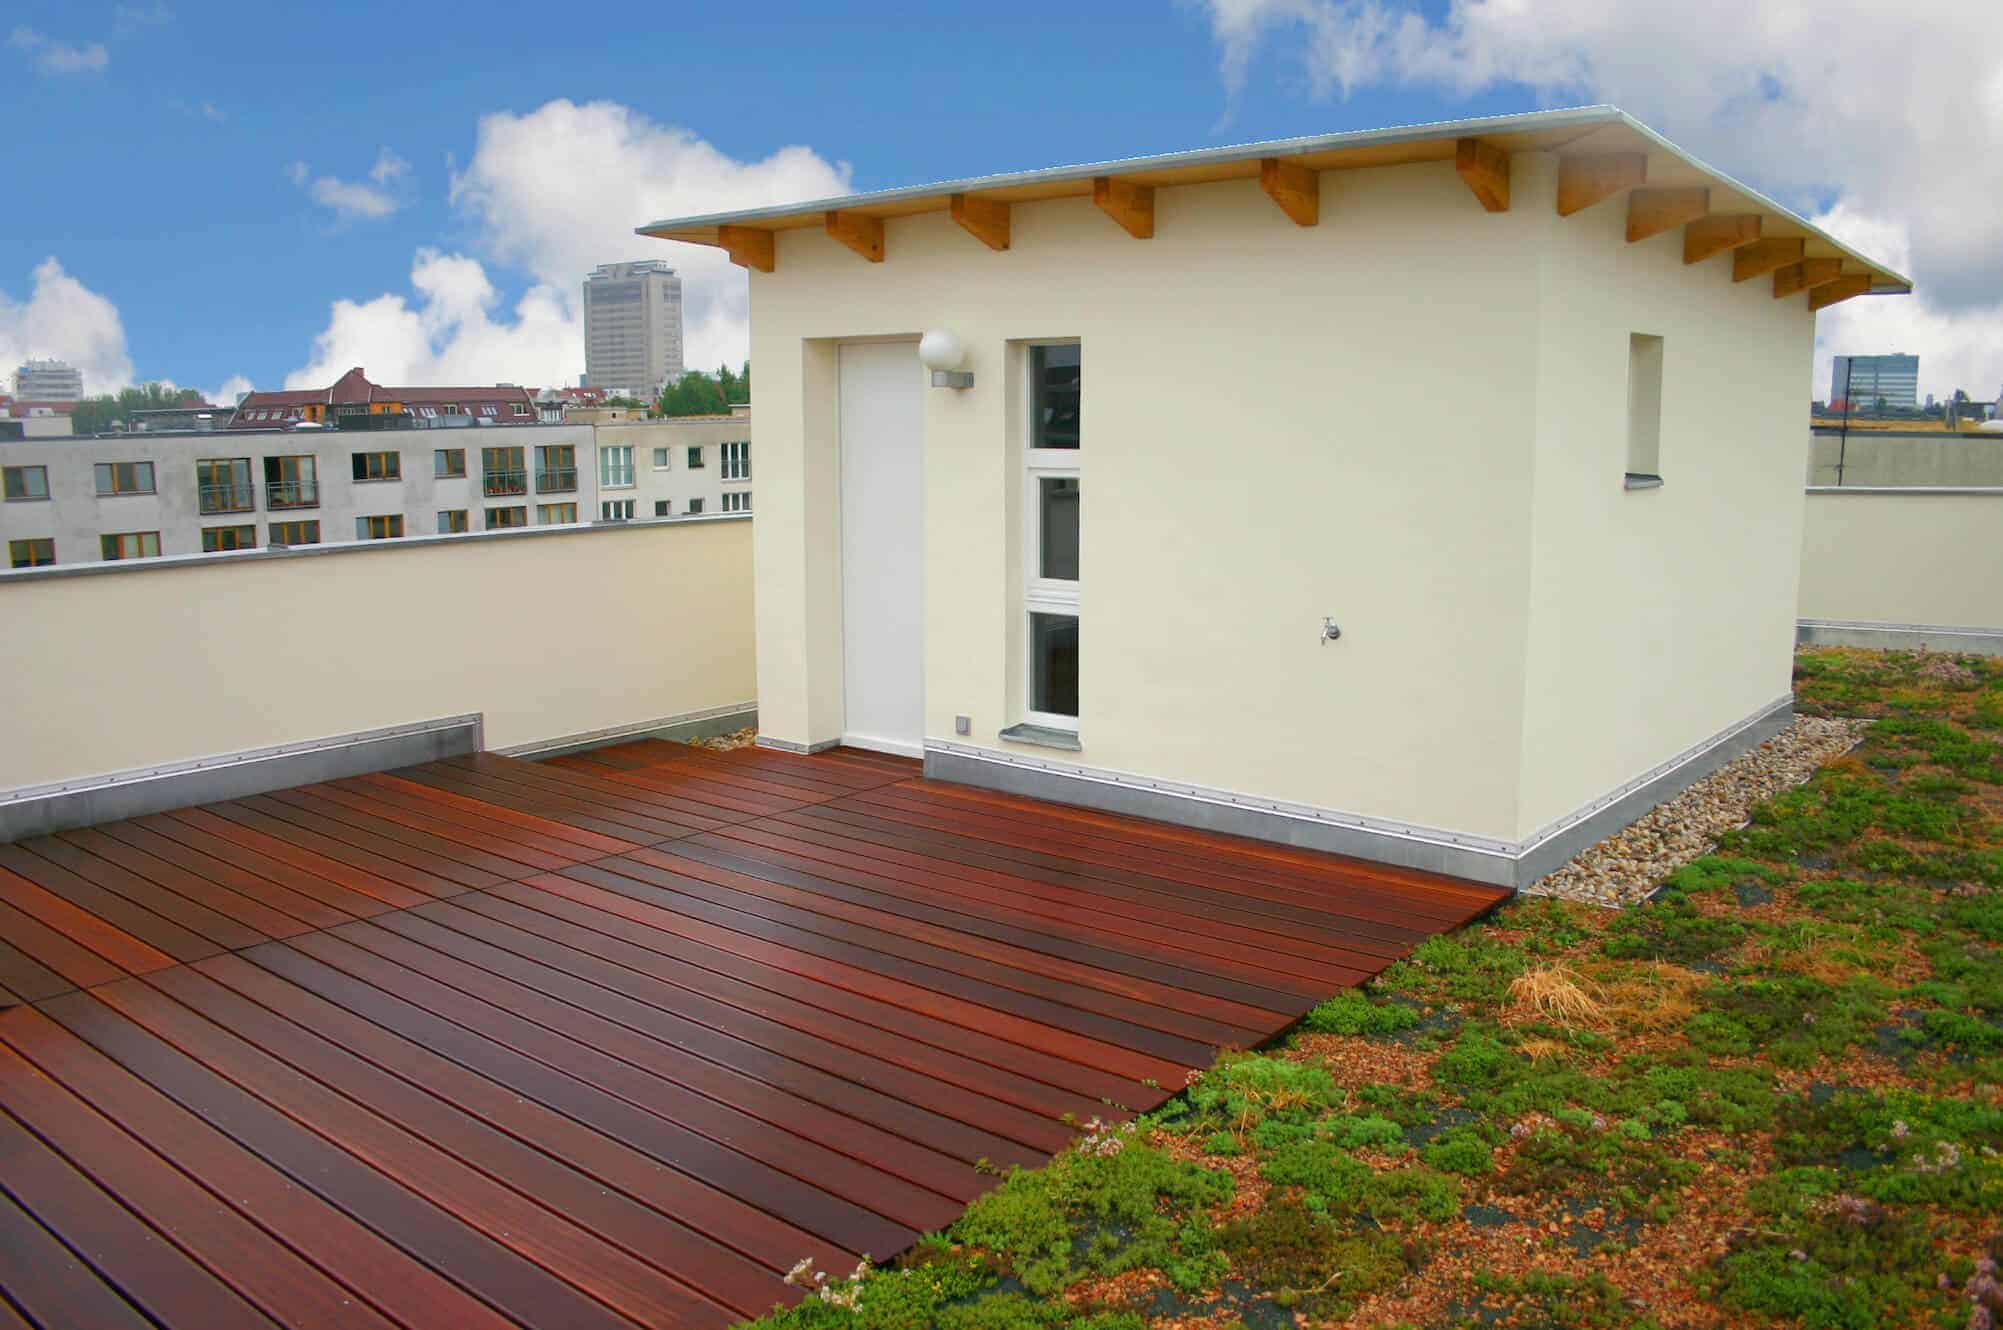 Dachterrasse mit Holz aus nachhaltigem Anbau